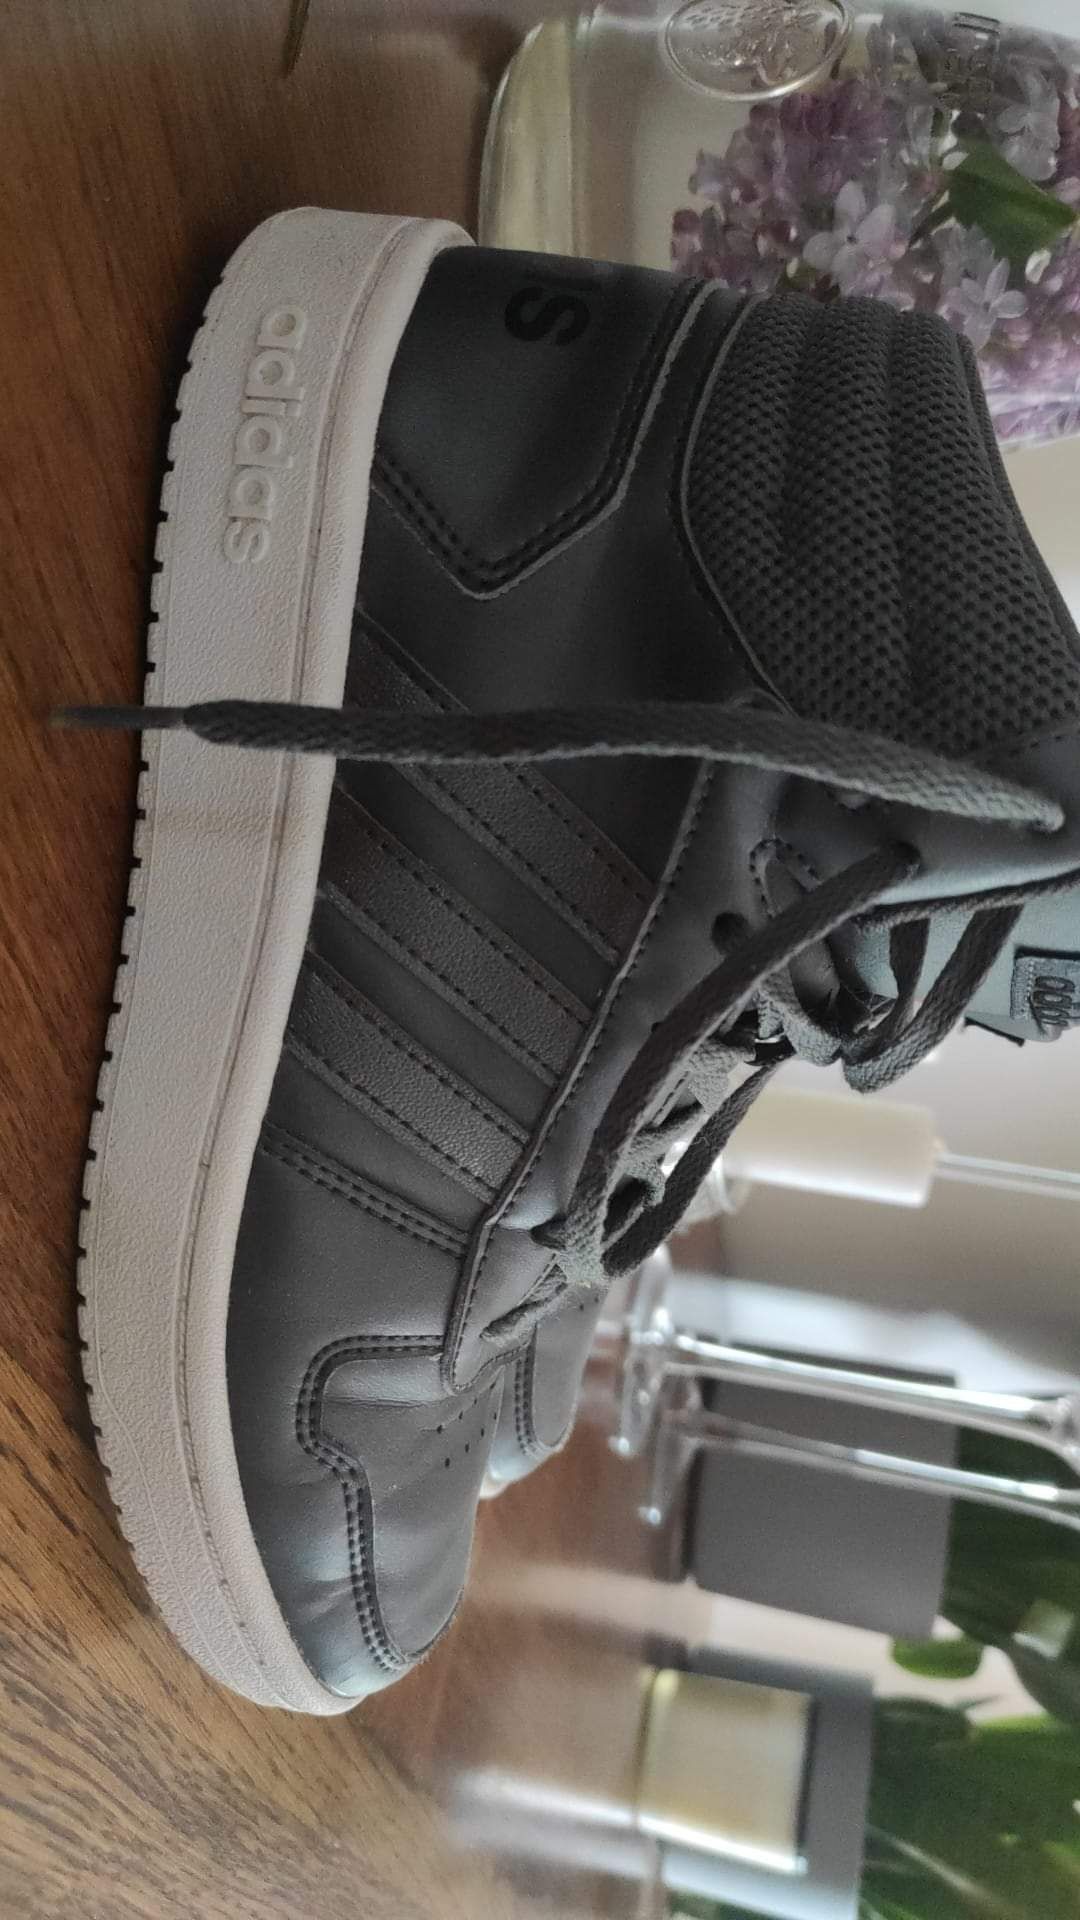 Adidas buty sportowe r.36,5 szare, metaliczne